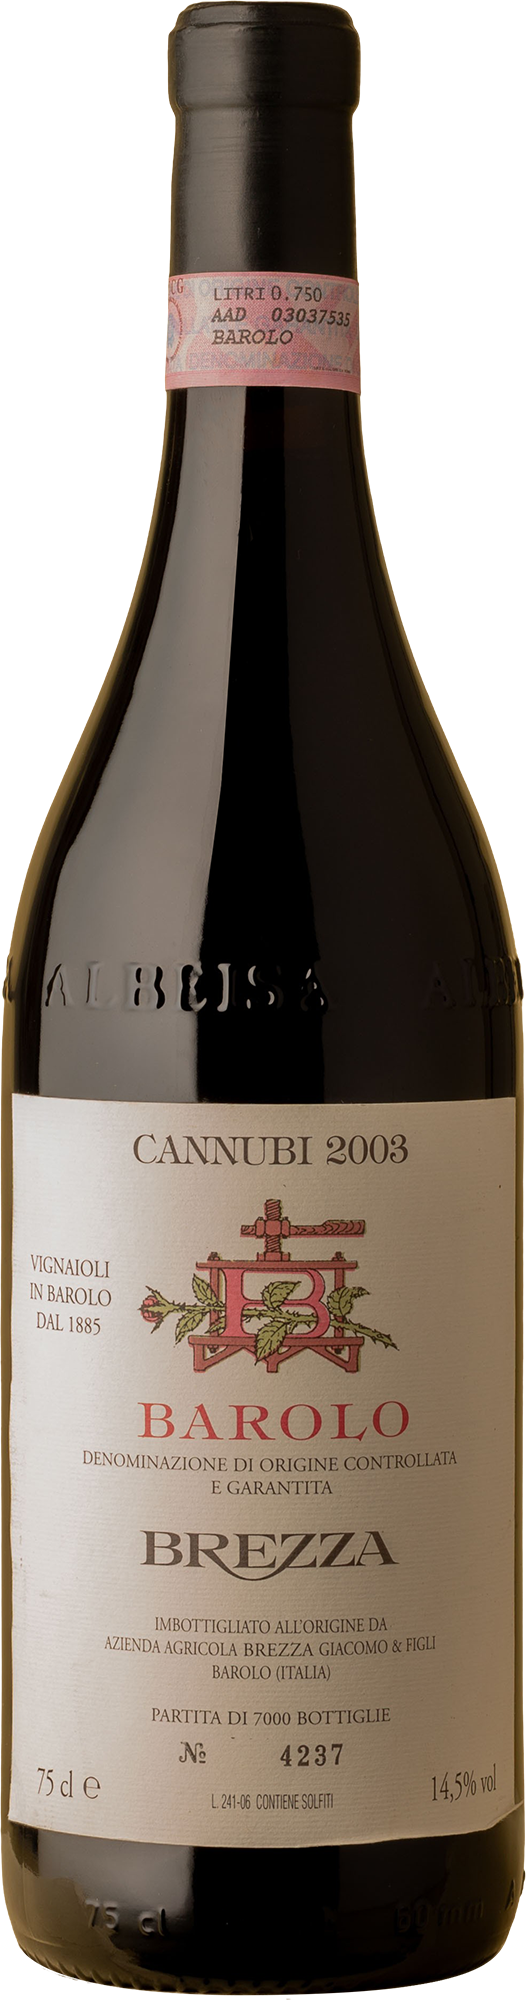 Brezza - Barolo Cannubi Nebbiolo 2003 Red Wine